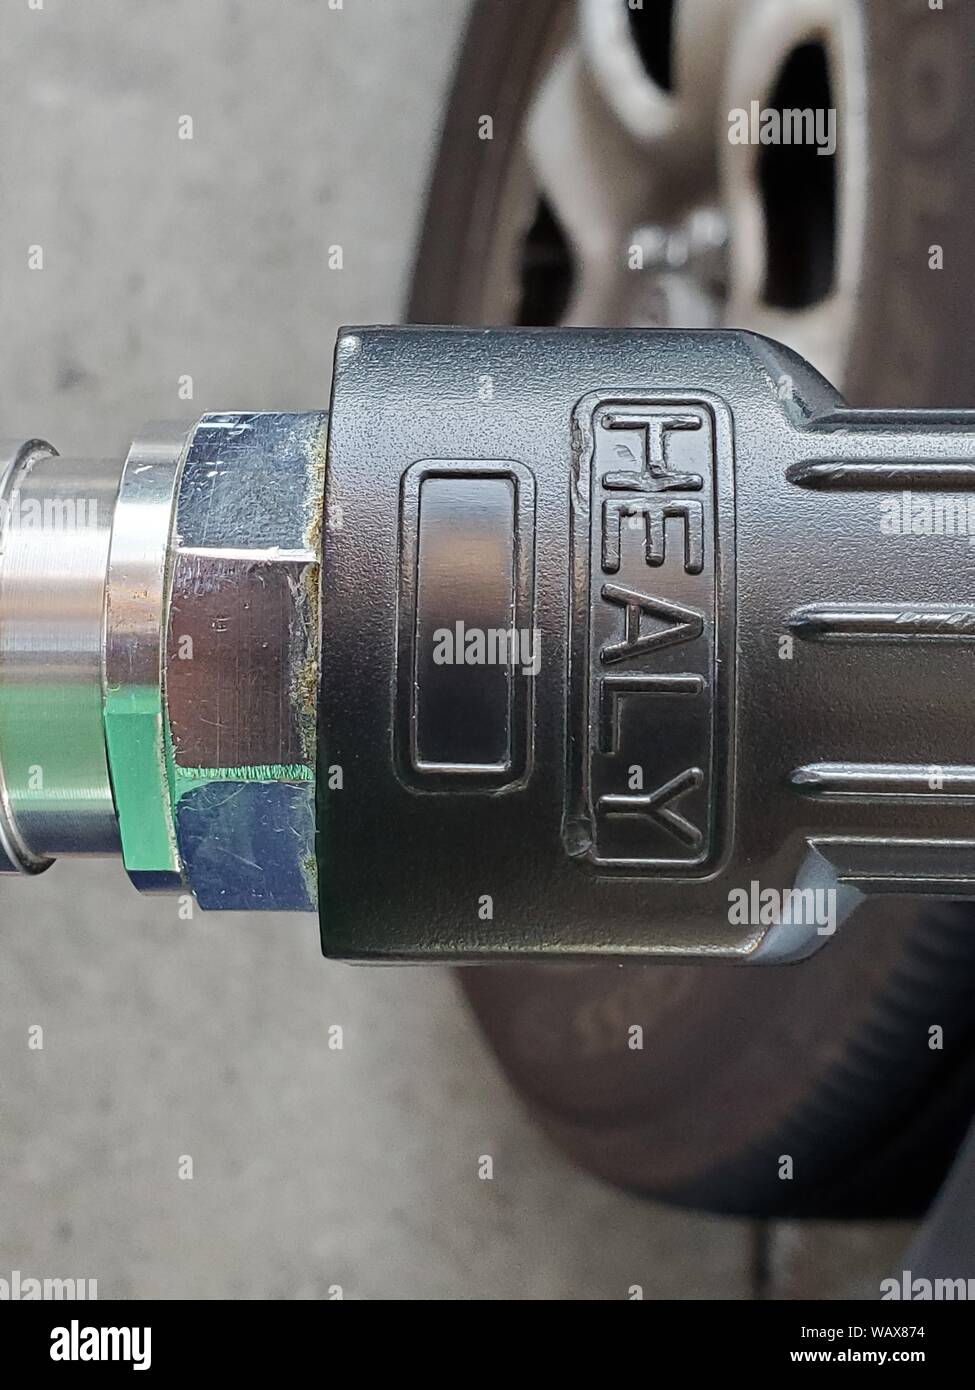 Close-up de logo pour Healy sur la récupération des vapeurs d'un flexible de pompe à gaz, avec pneu de voiture visible, à une station-service, le 21 août 2019. () Banque D'Images